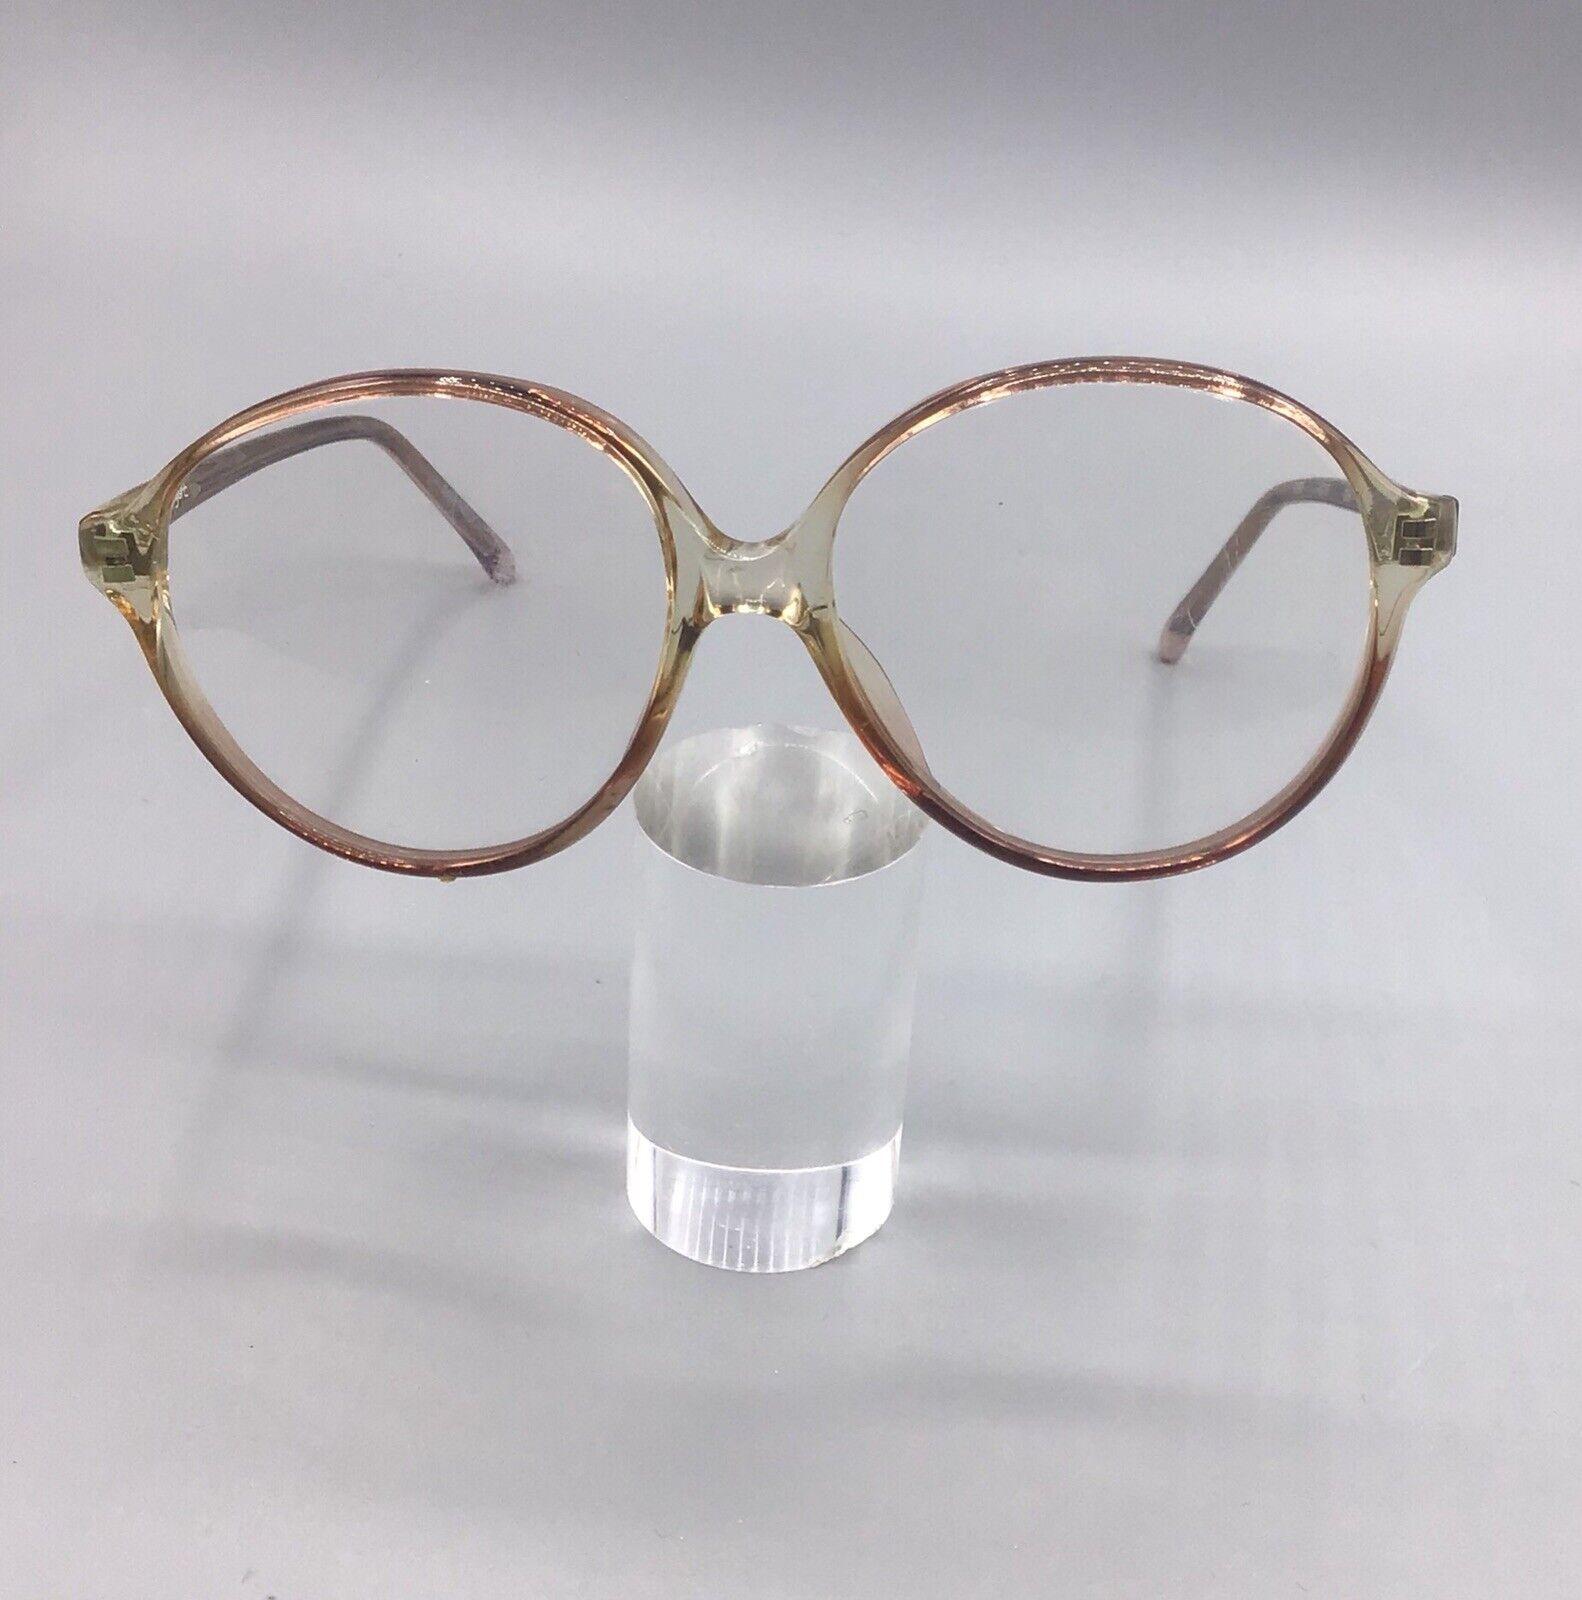 Vogart L90 206 occhiale vintage eyewear frame brillen lunettes